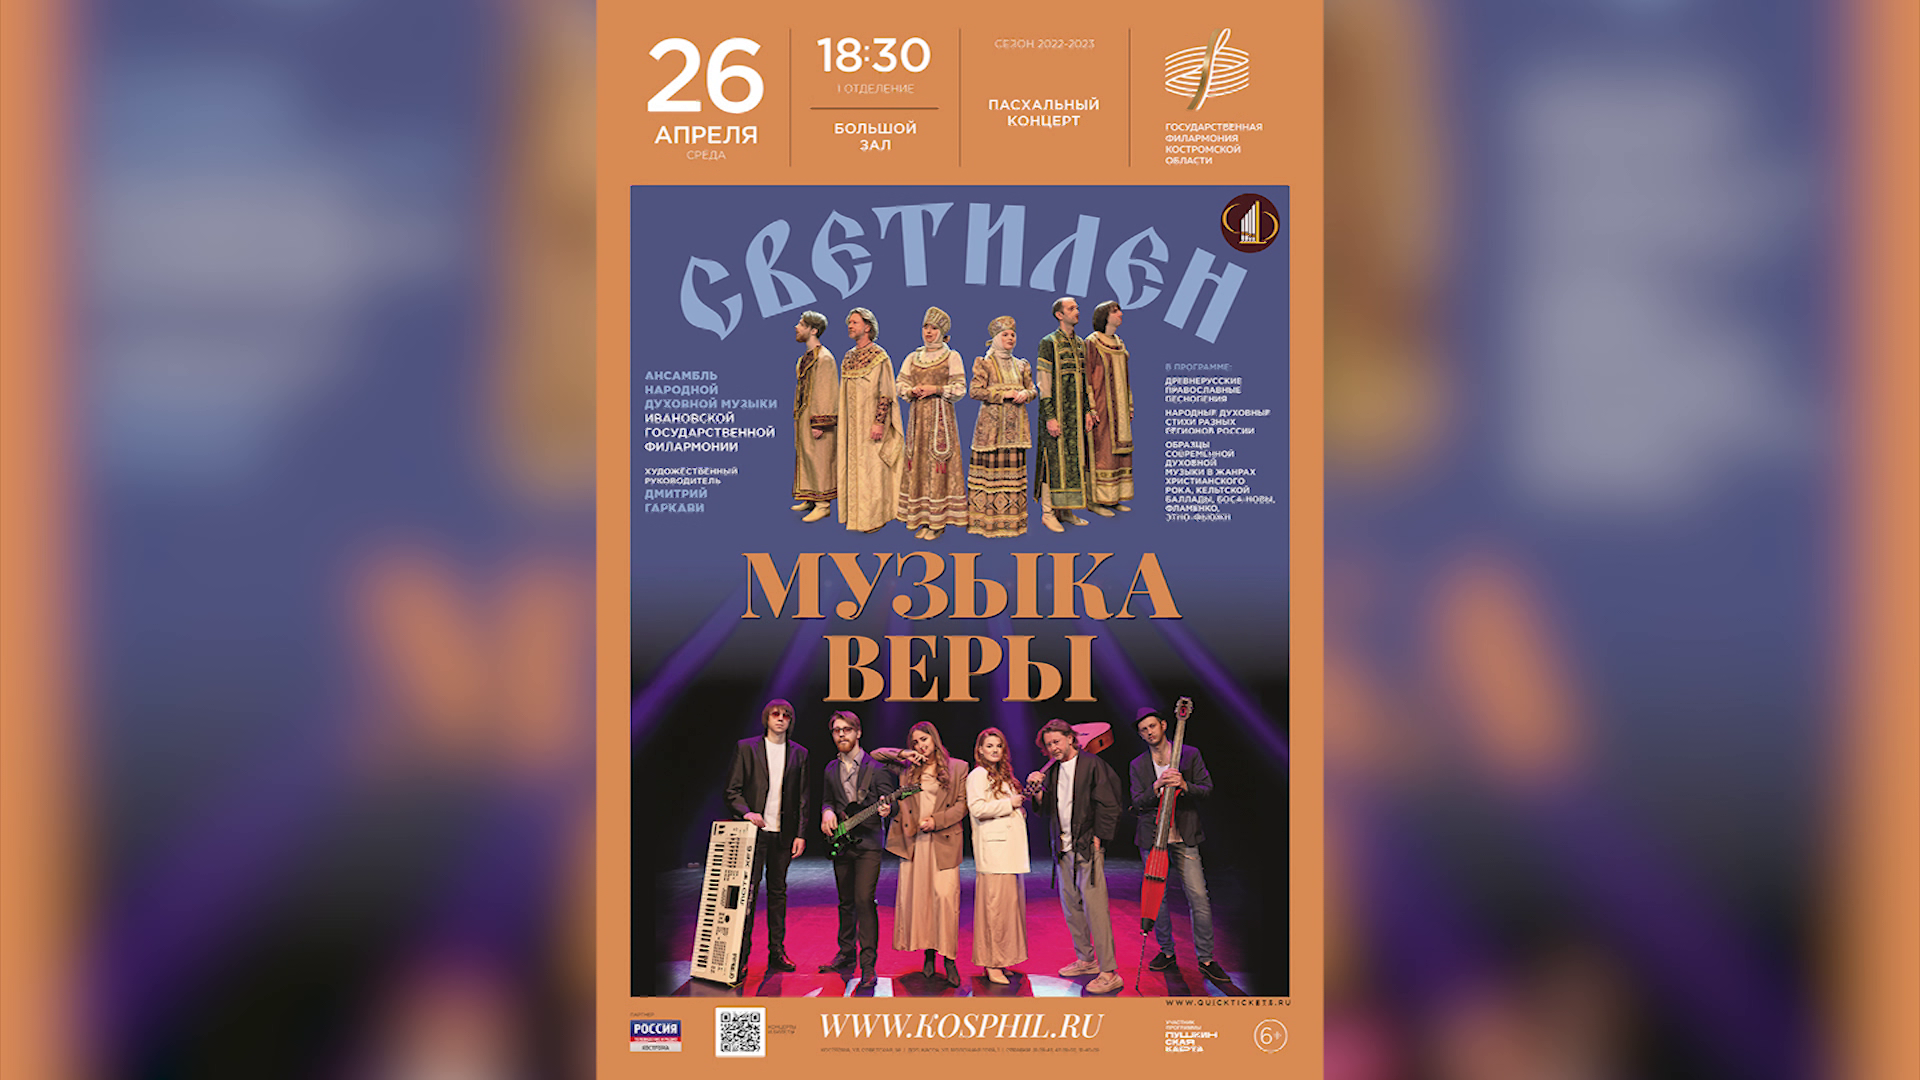 Костромских меломанов приглашают послушать христианский рок